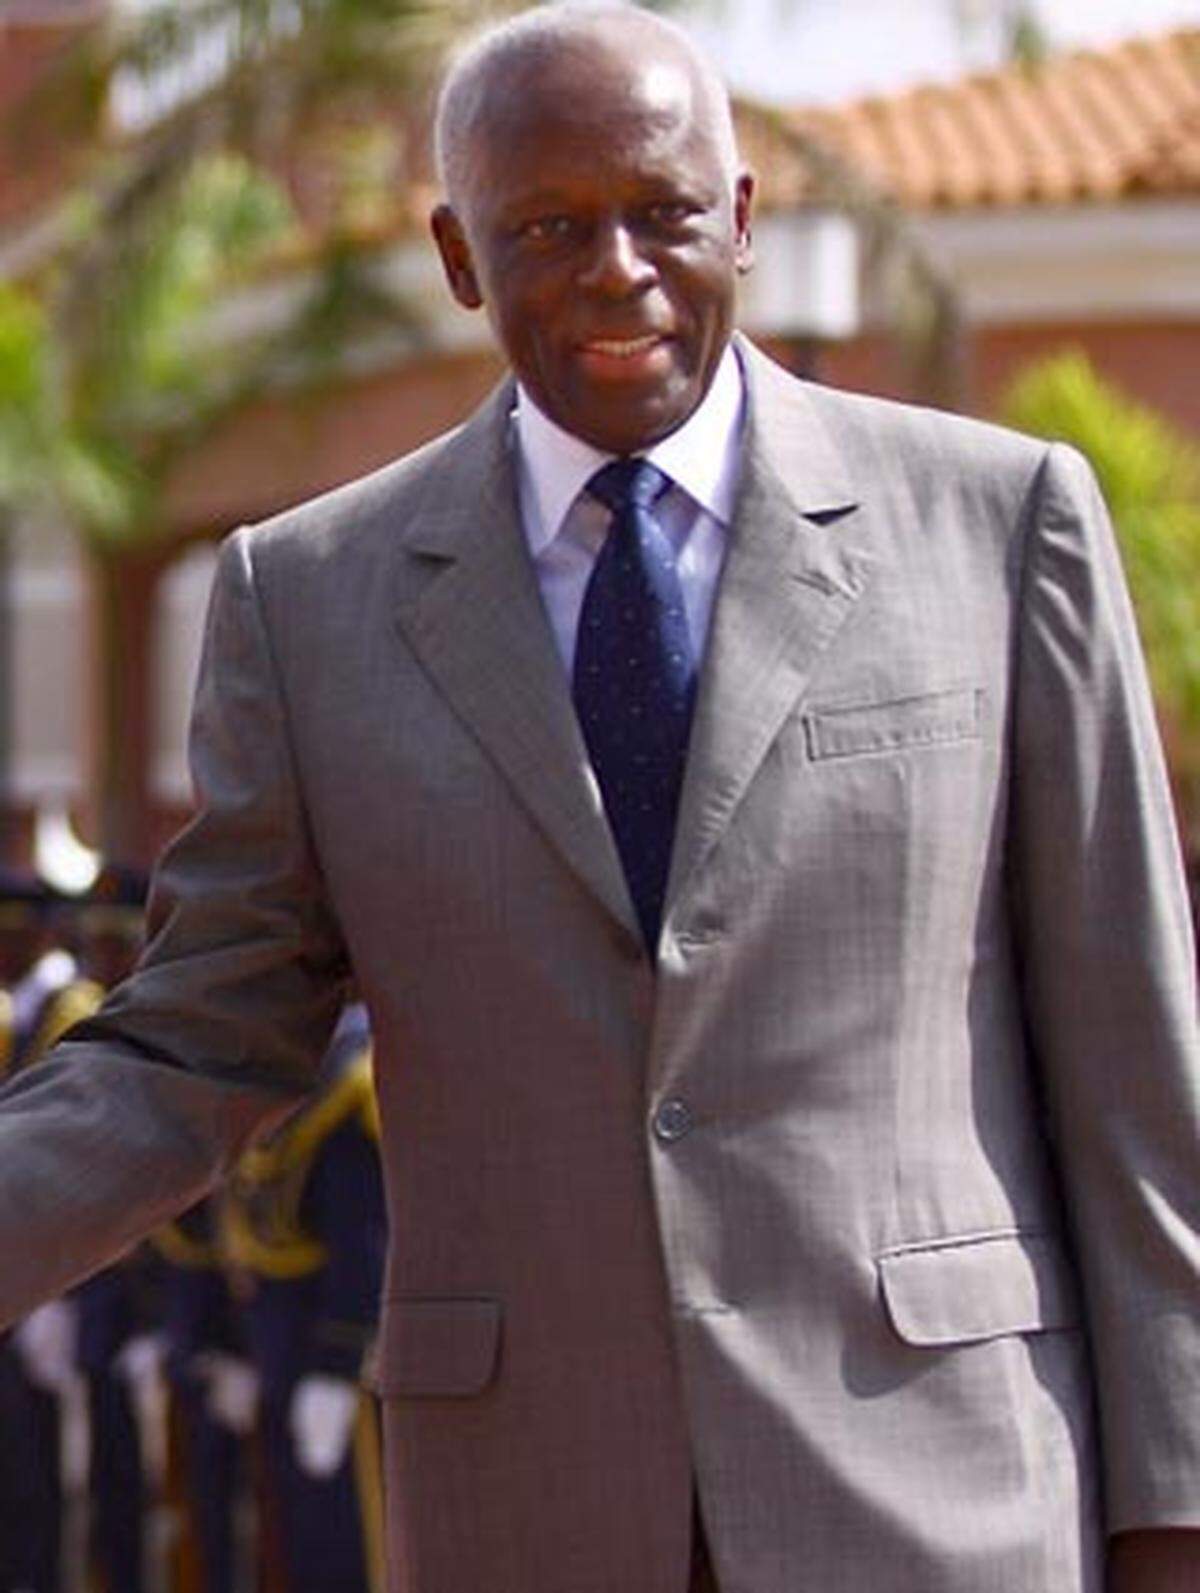 José Eduardo dos Santos ist seit 1979 der amtierende Präsident von Angola. Der Aufbau des Landes kam bisher nicht voran. Die Einkünfte aus der Erdöl- und Diamantenförderung fließen in die Taschen einer schmalen Oberschicht. Dos Santos gilt als steinreich.